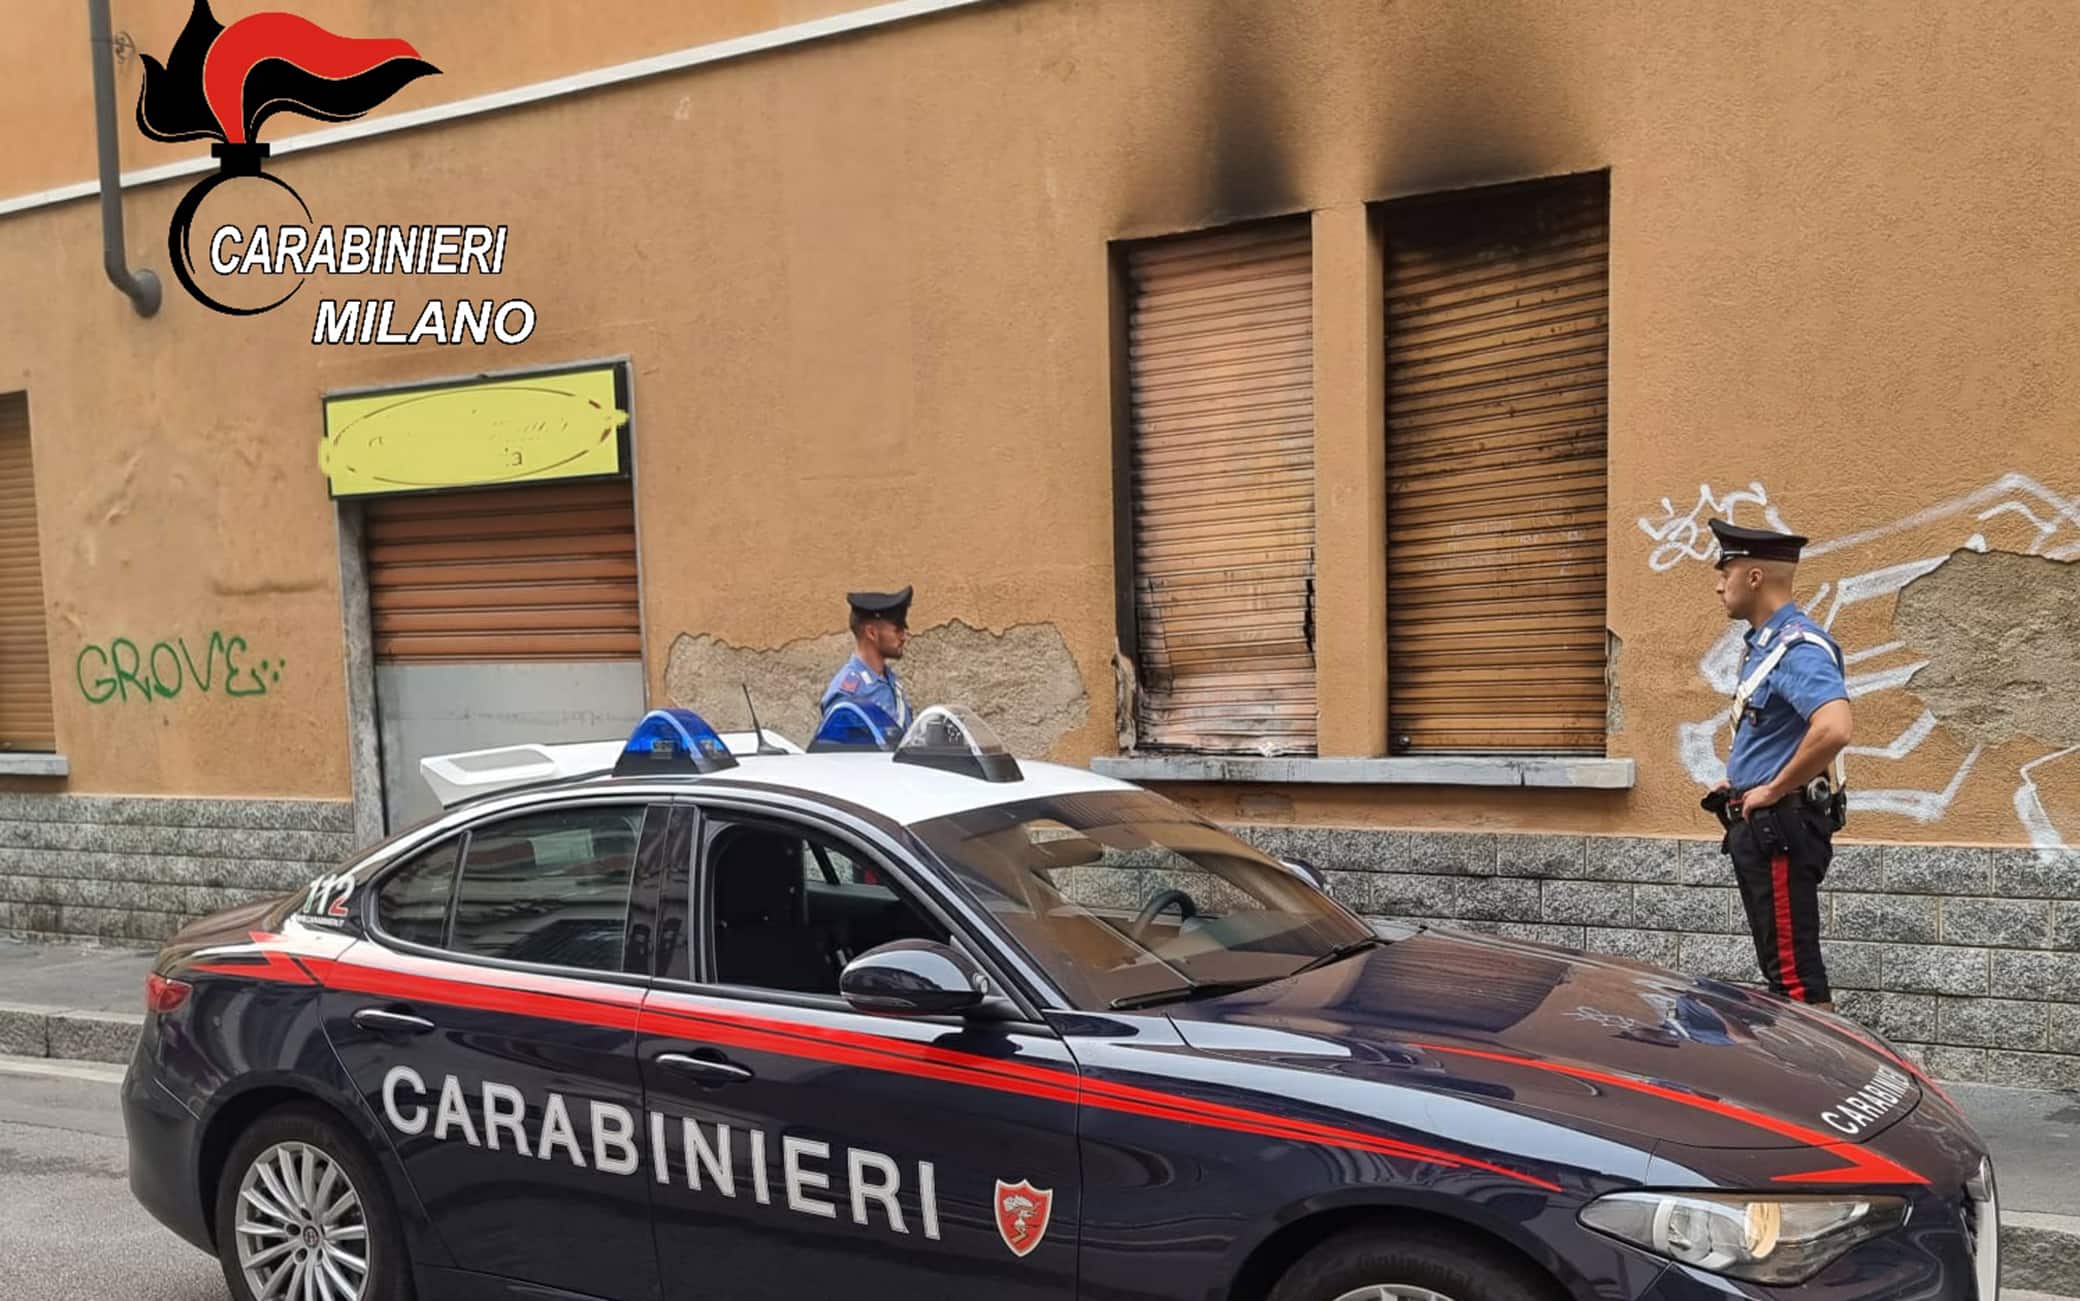 Incendio doloso pasticceria Gola e Vanità Corsico - Per edizione Milano metropoli - 17 agosto 2022 - Foto Spf/ANSA